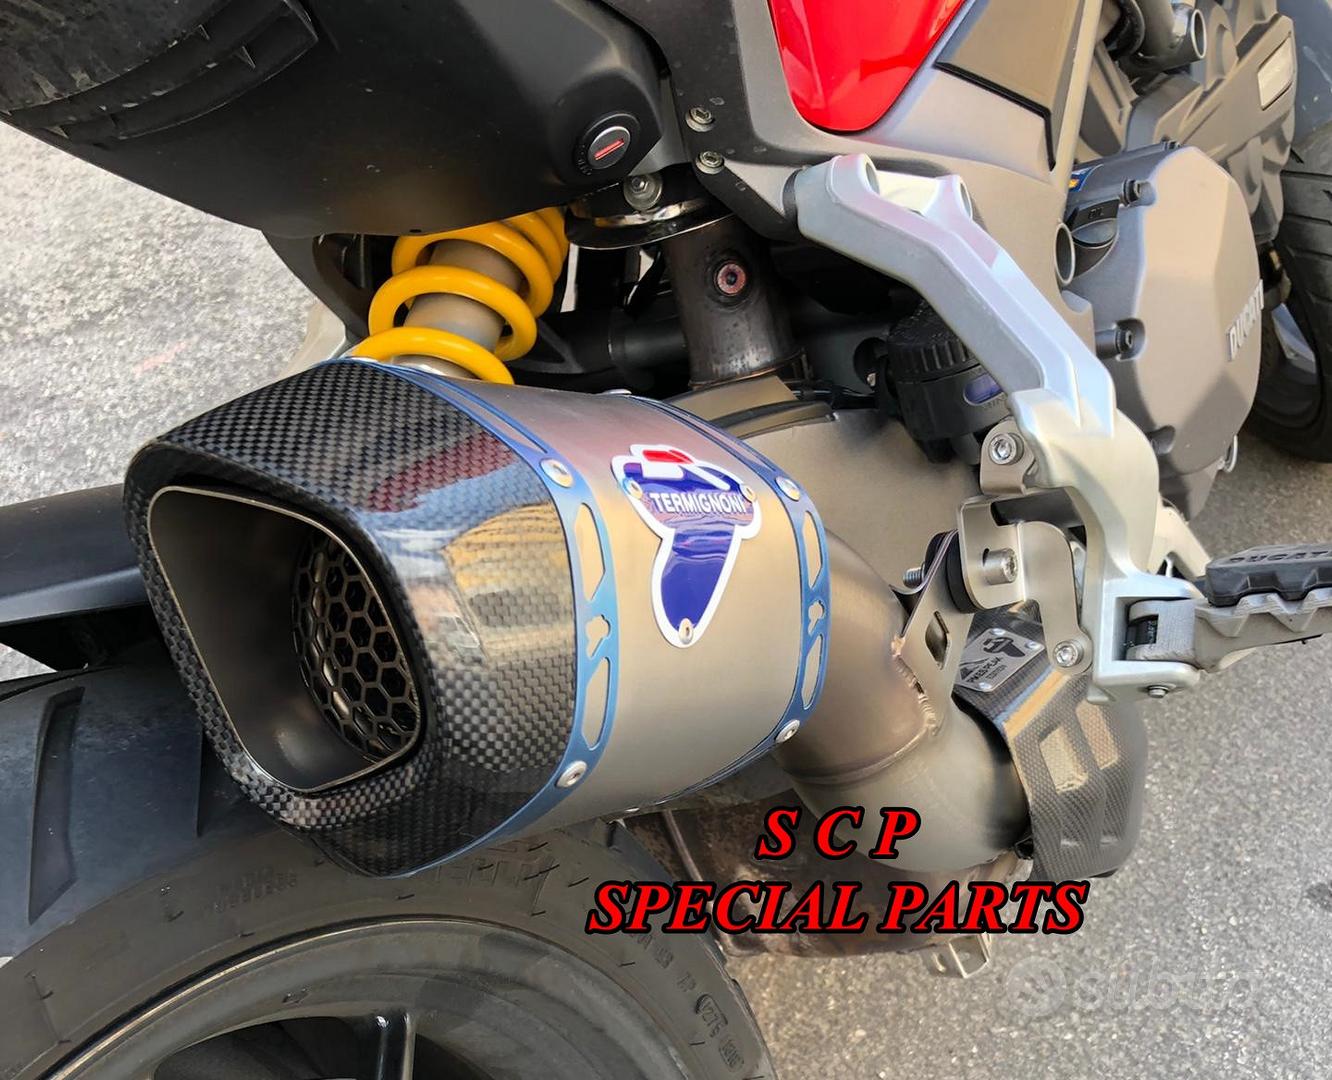 Subito - SCP SPECIAL PARTS - SUPERBIKE CARBON PARTS - Ducati multistrada  termignoni terminale pikes peak - Accessori Moto In vendita a La Spezia